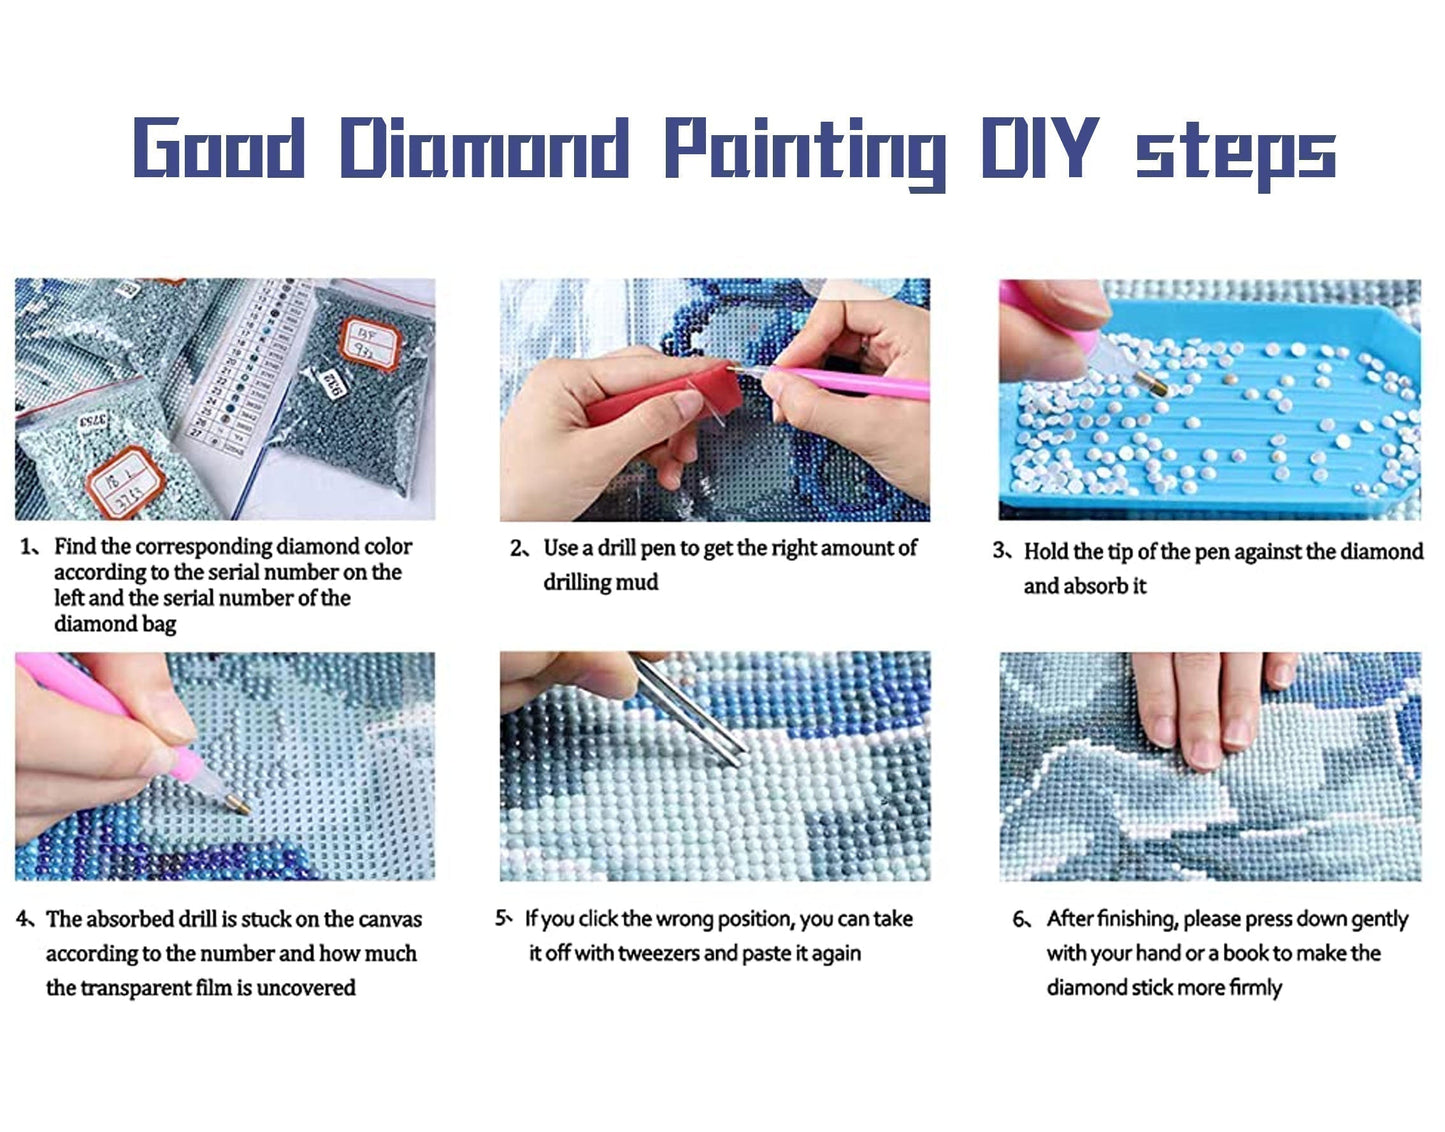 Diamond Painting Kits   |  Colorful tree